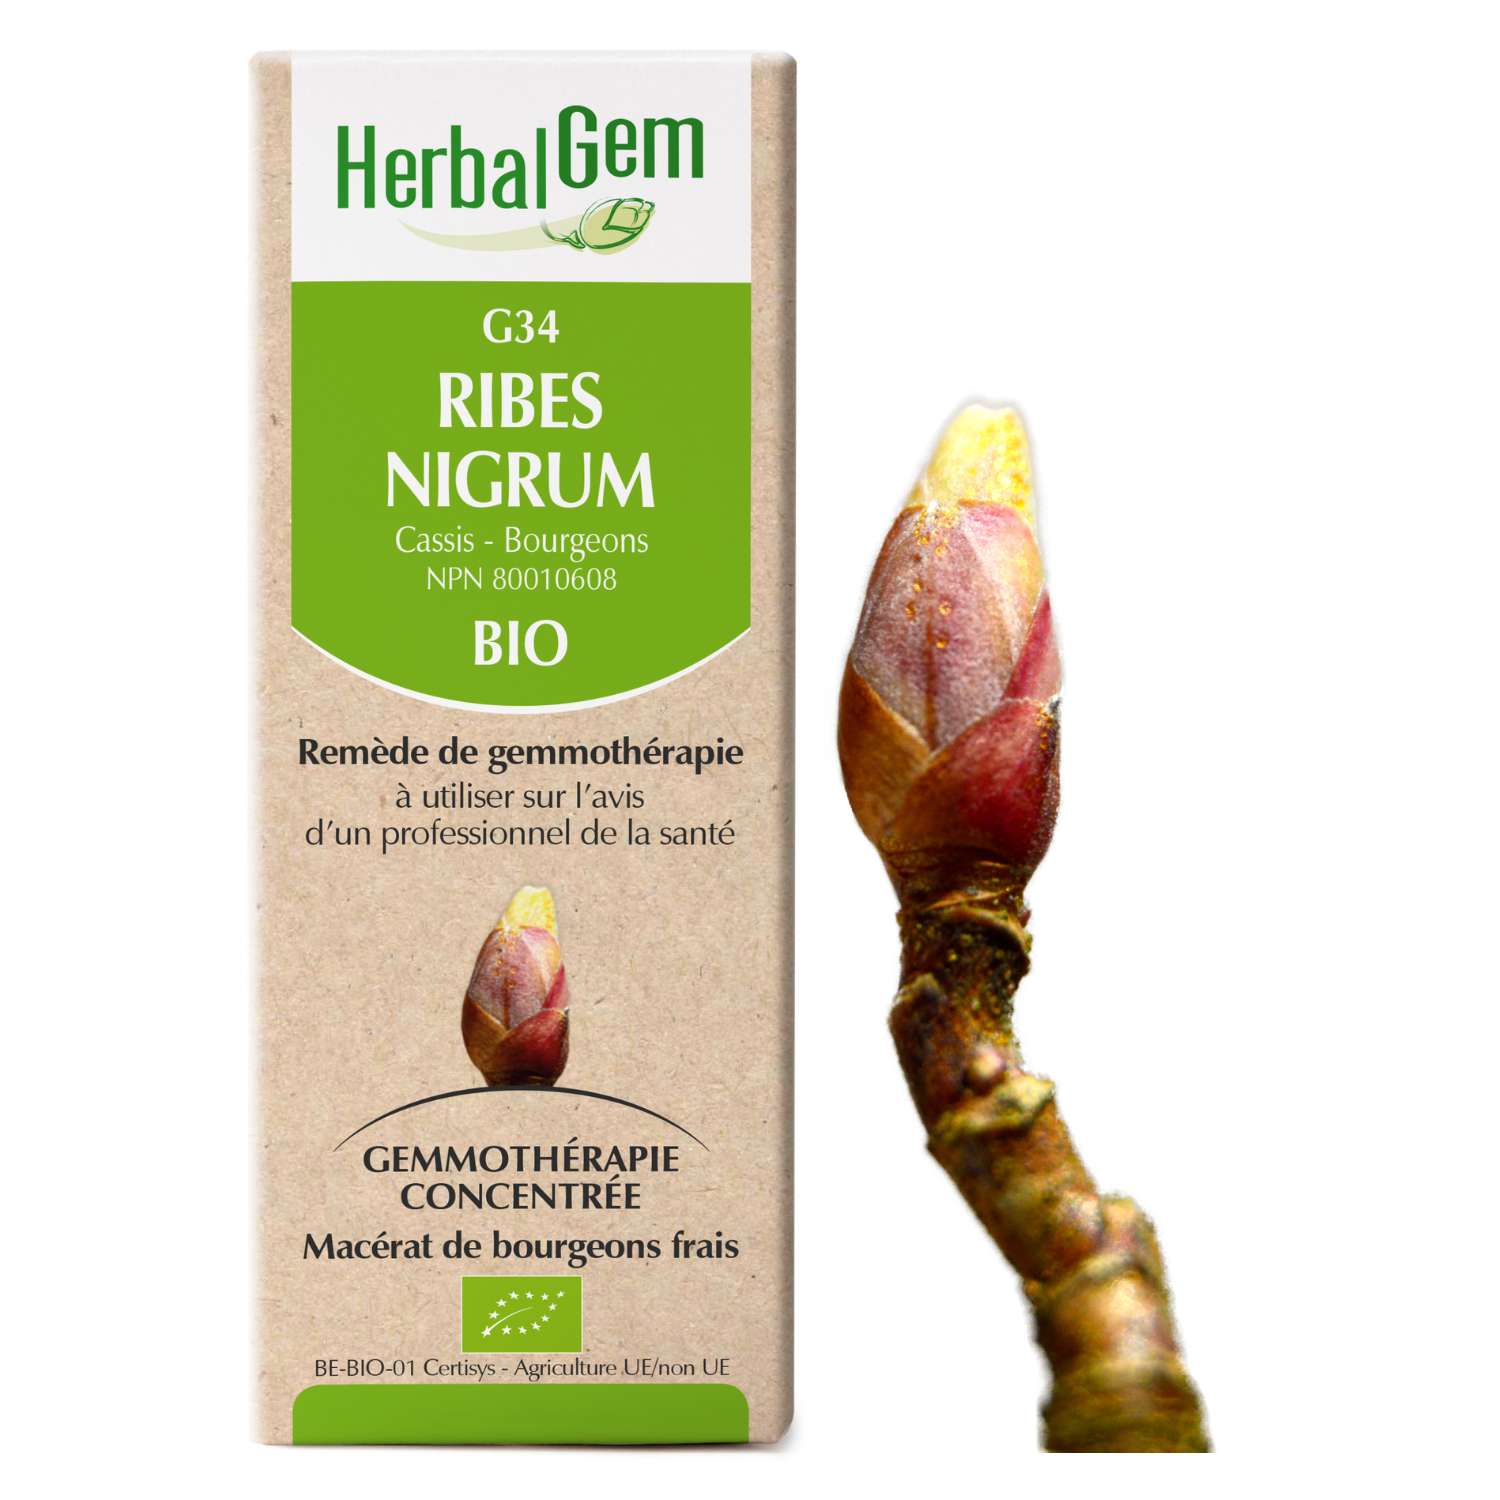 Ribes nigrum (Black currant) G34